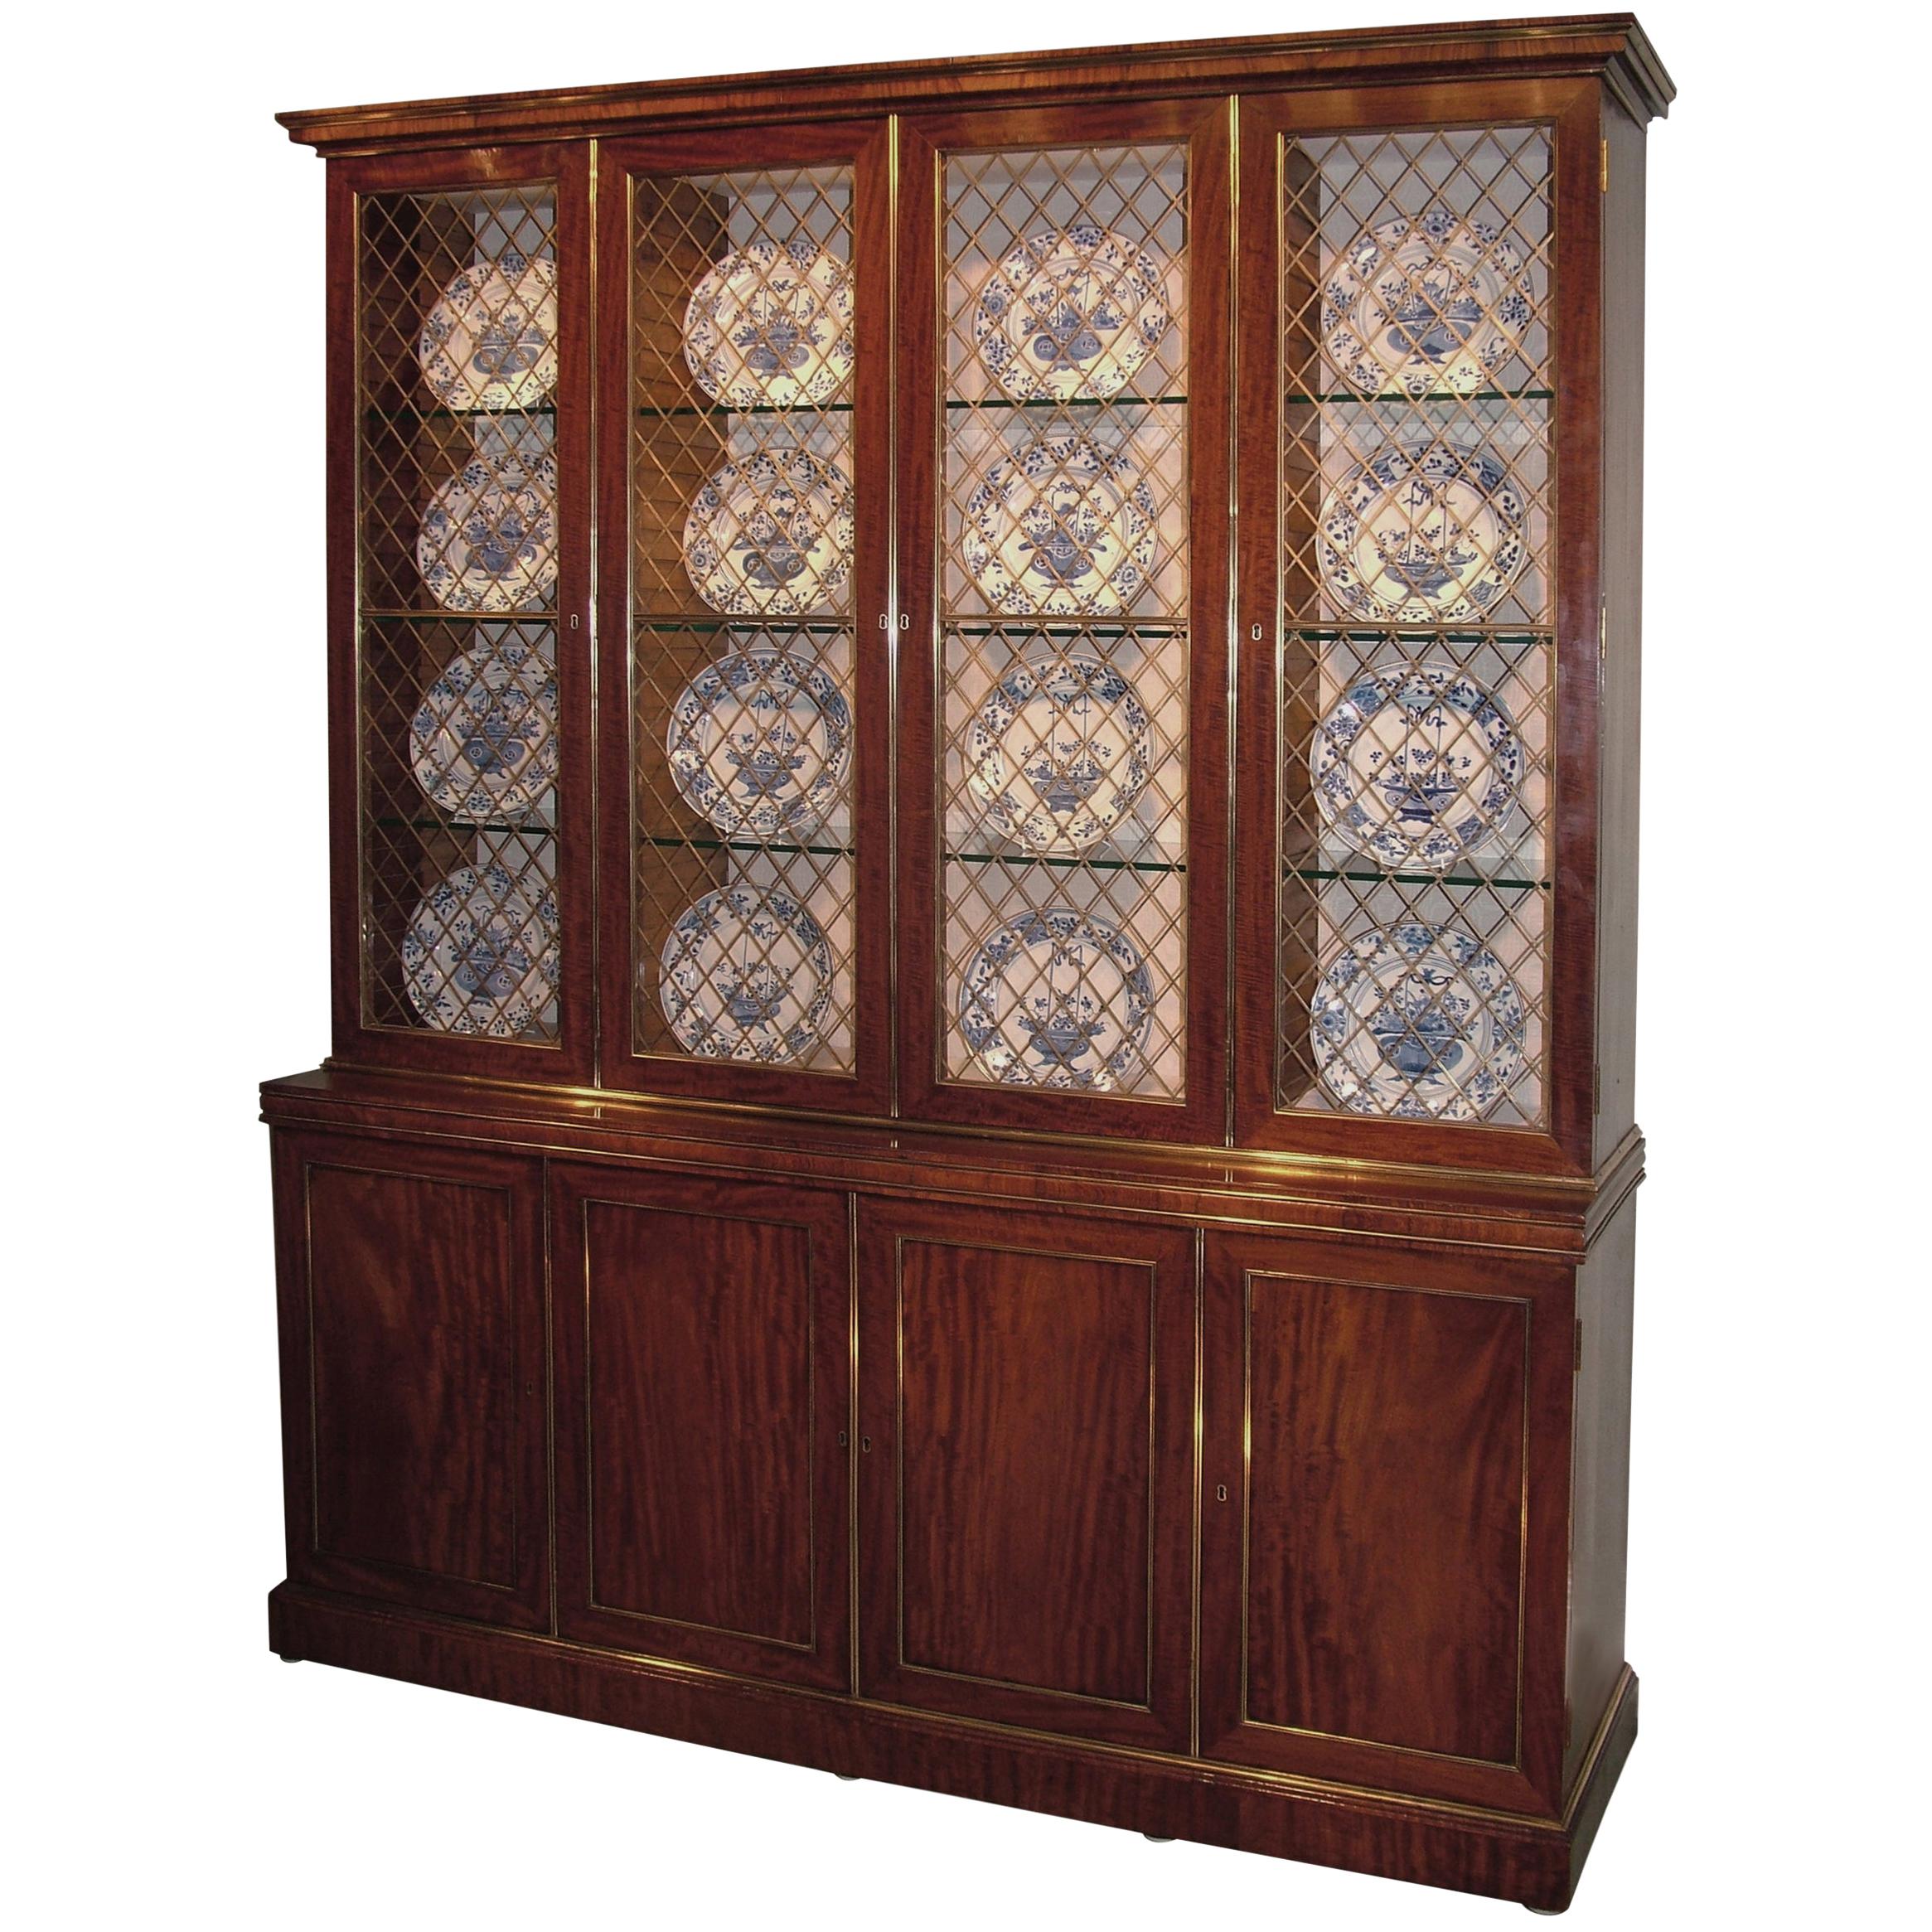 Fine Early 19th Century Regency Period Mahogany Display Bookcase